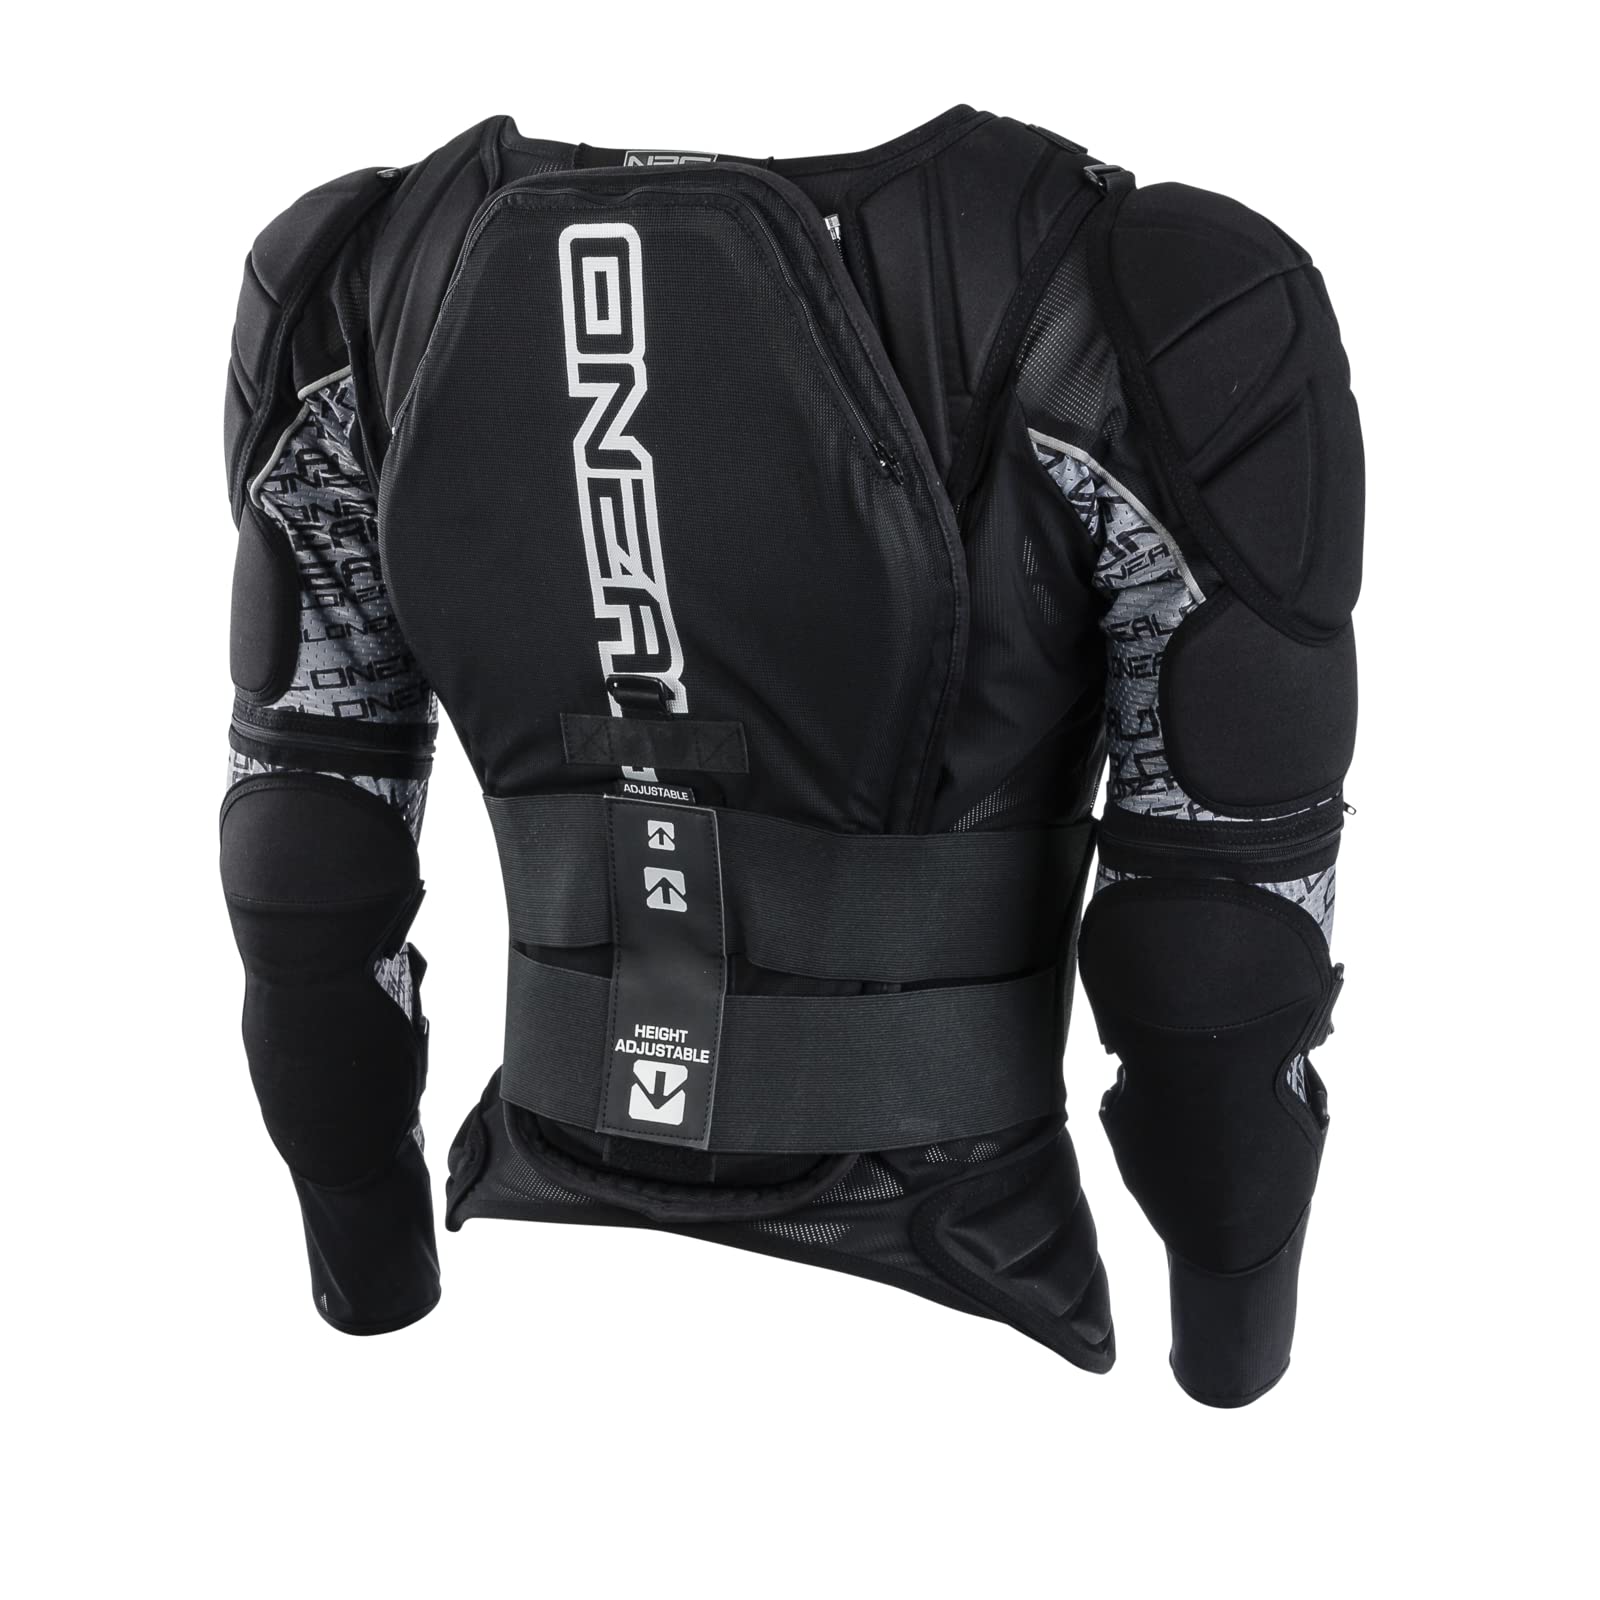 O'NEAL | Protektoren-Jacke | Motocross Enduro | Rückenprotektor mit IPX® Schaum, elastischer Nierengurt, Umfangreiche Mesh-Belüftung | MADASS Moveo Protector Jacke | Erwachsene | Schwarz | Größe M von O'NEAL